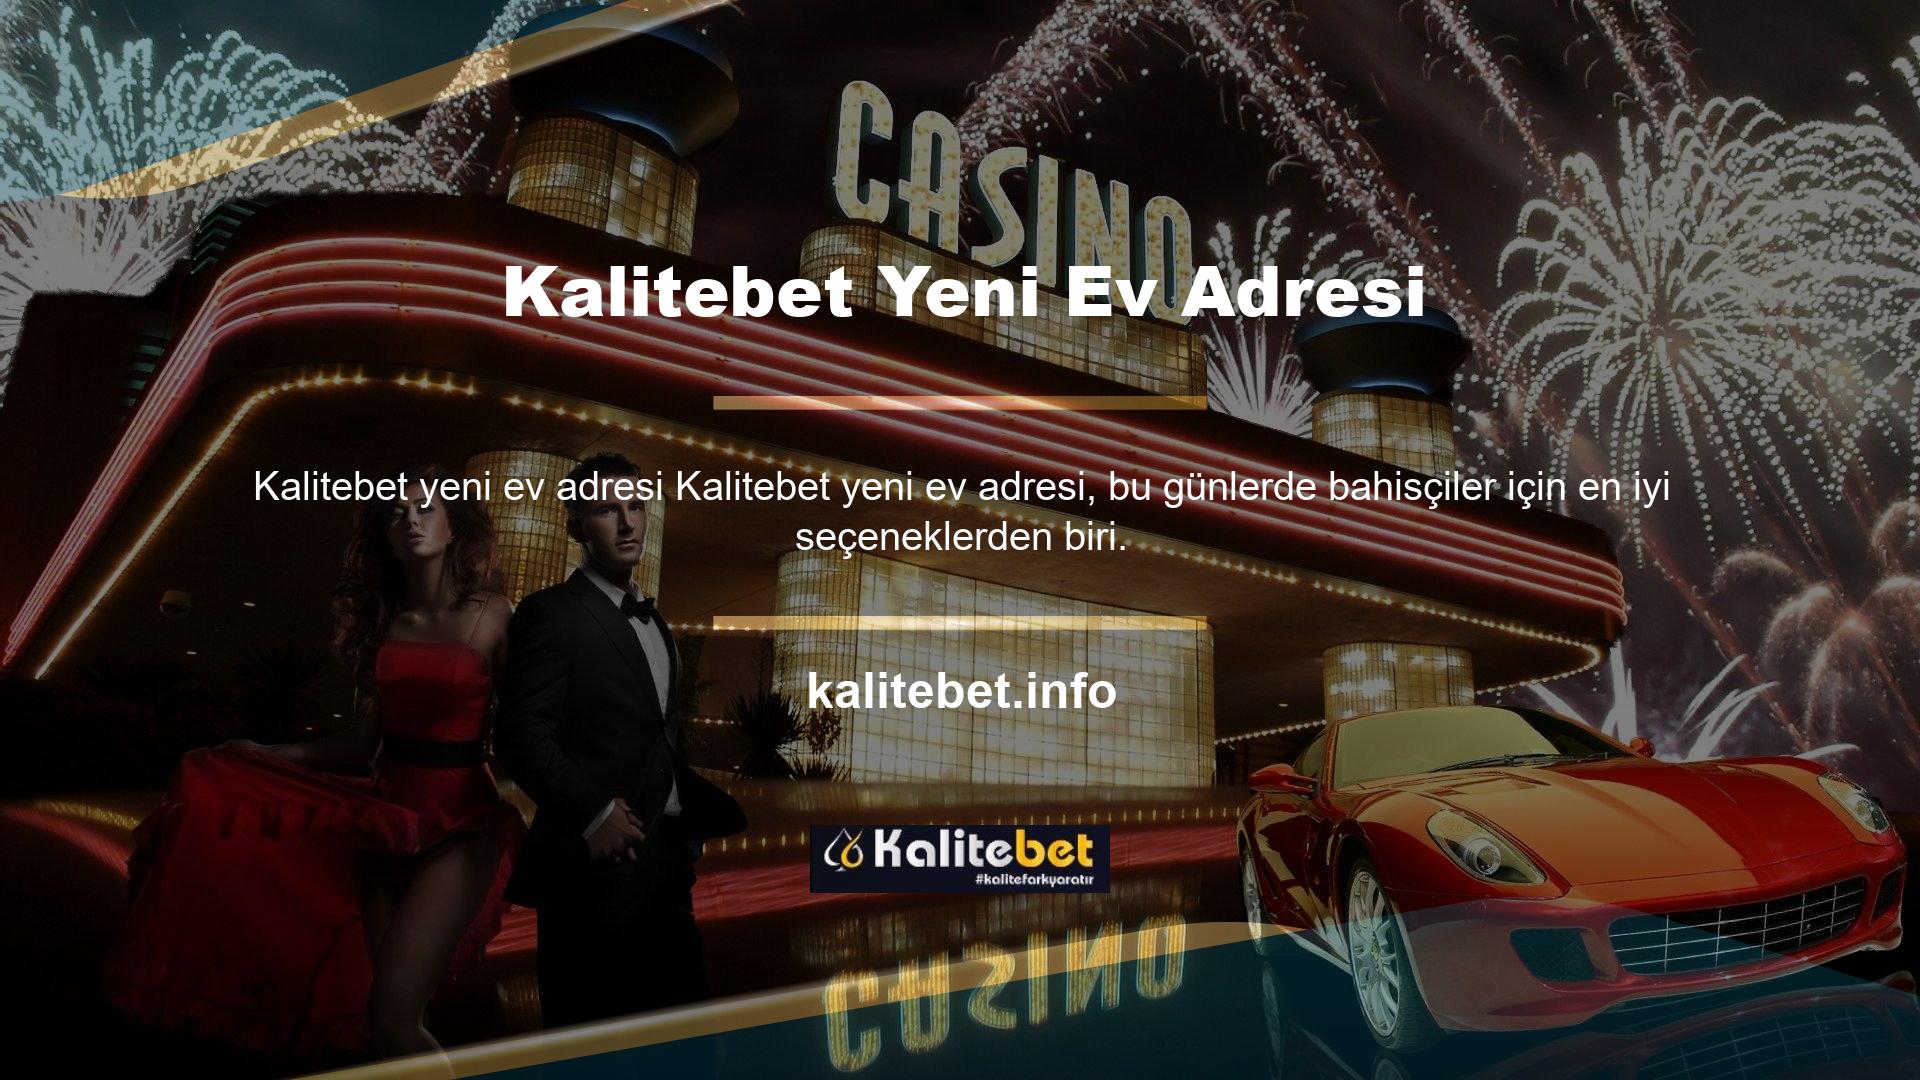 Kalitebet en popüler sitelerden biridir